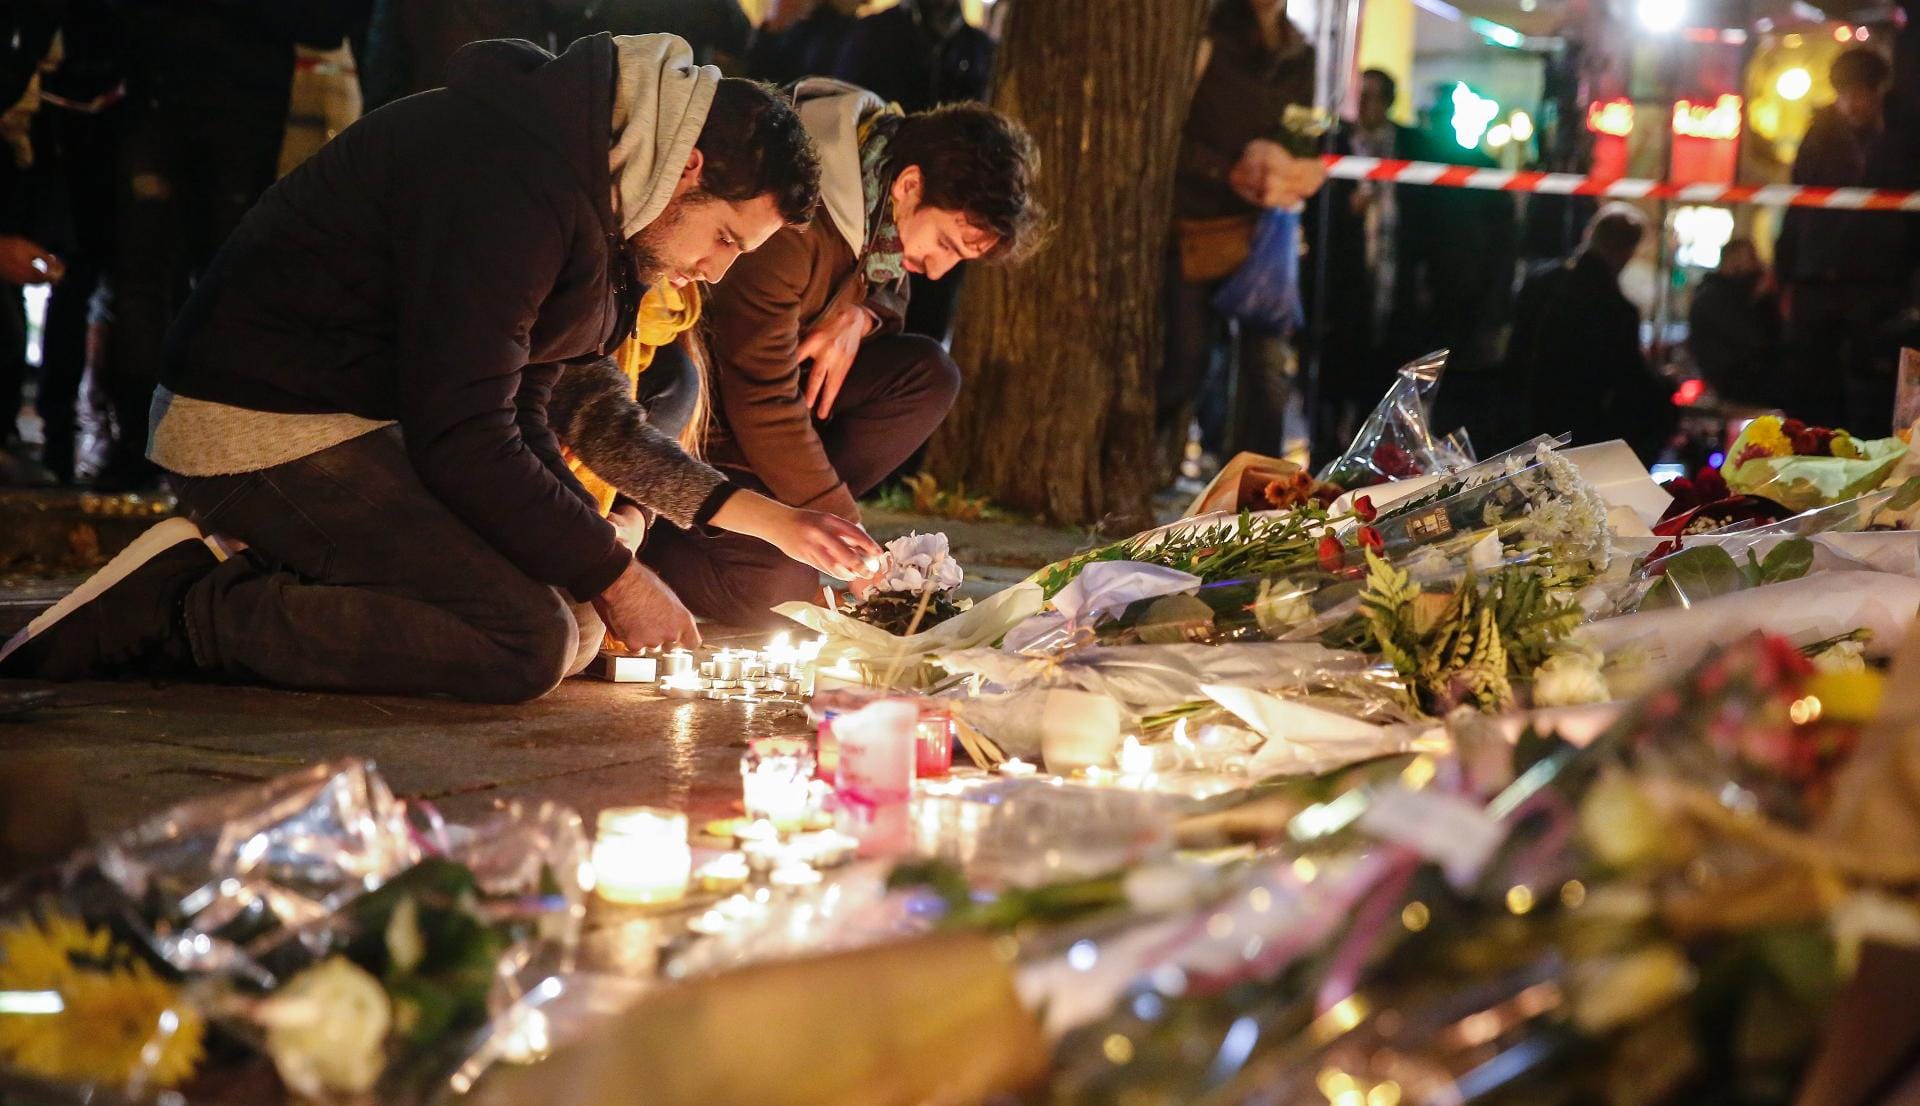 Auch in der Nähe des Konzertsaales Bataclan, wo am meisten Menschen ums Leben kamen, fanden sich Trauernde ein. Sie legten Blumen nieder und zündeten Kerzen zum Gedenken an die Opfer an.